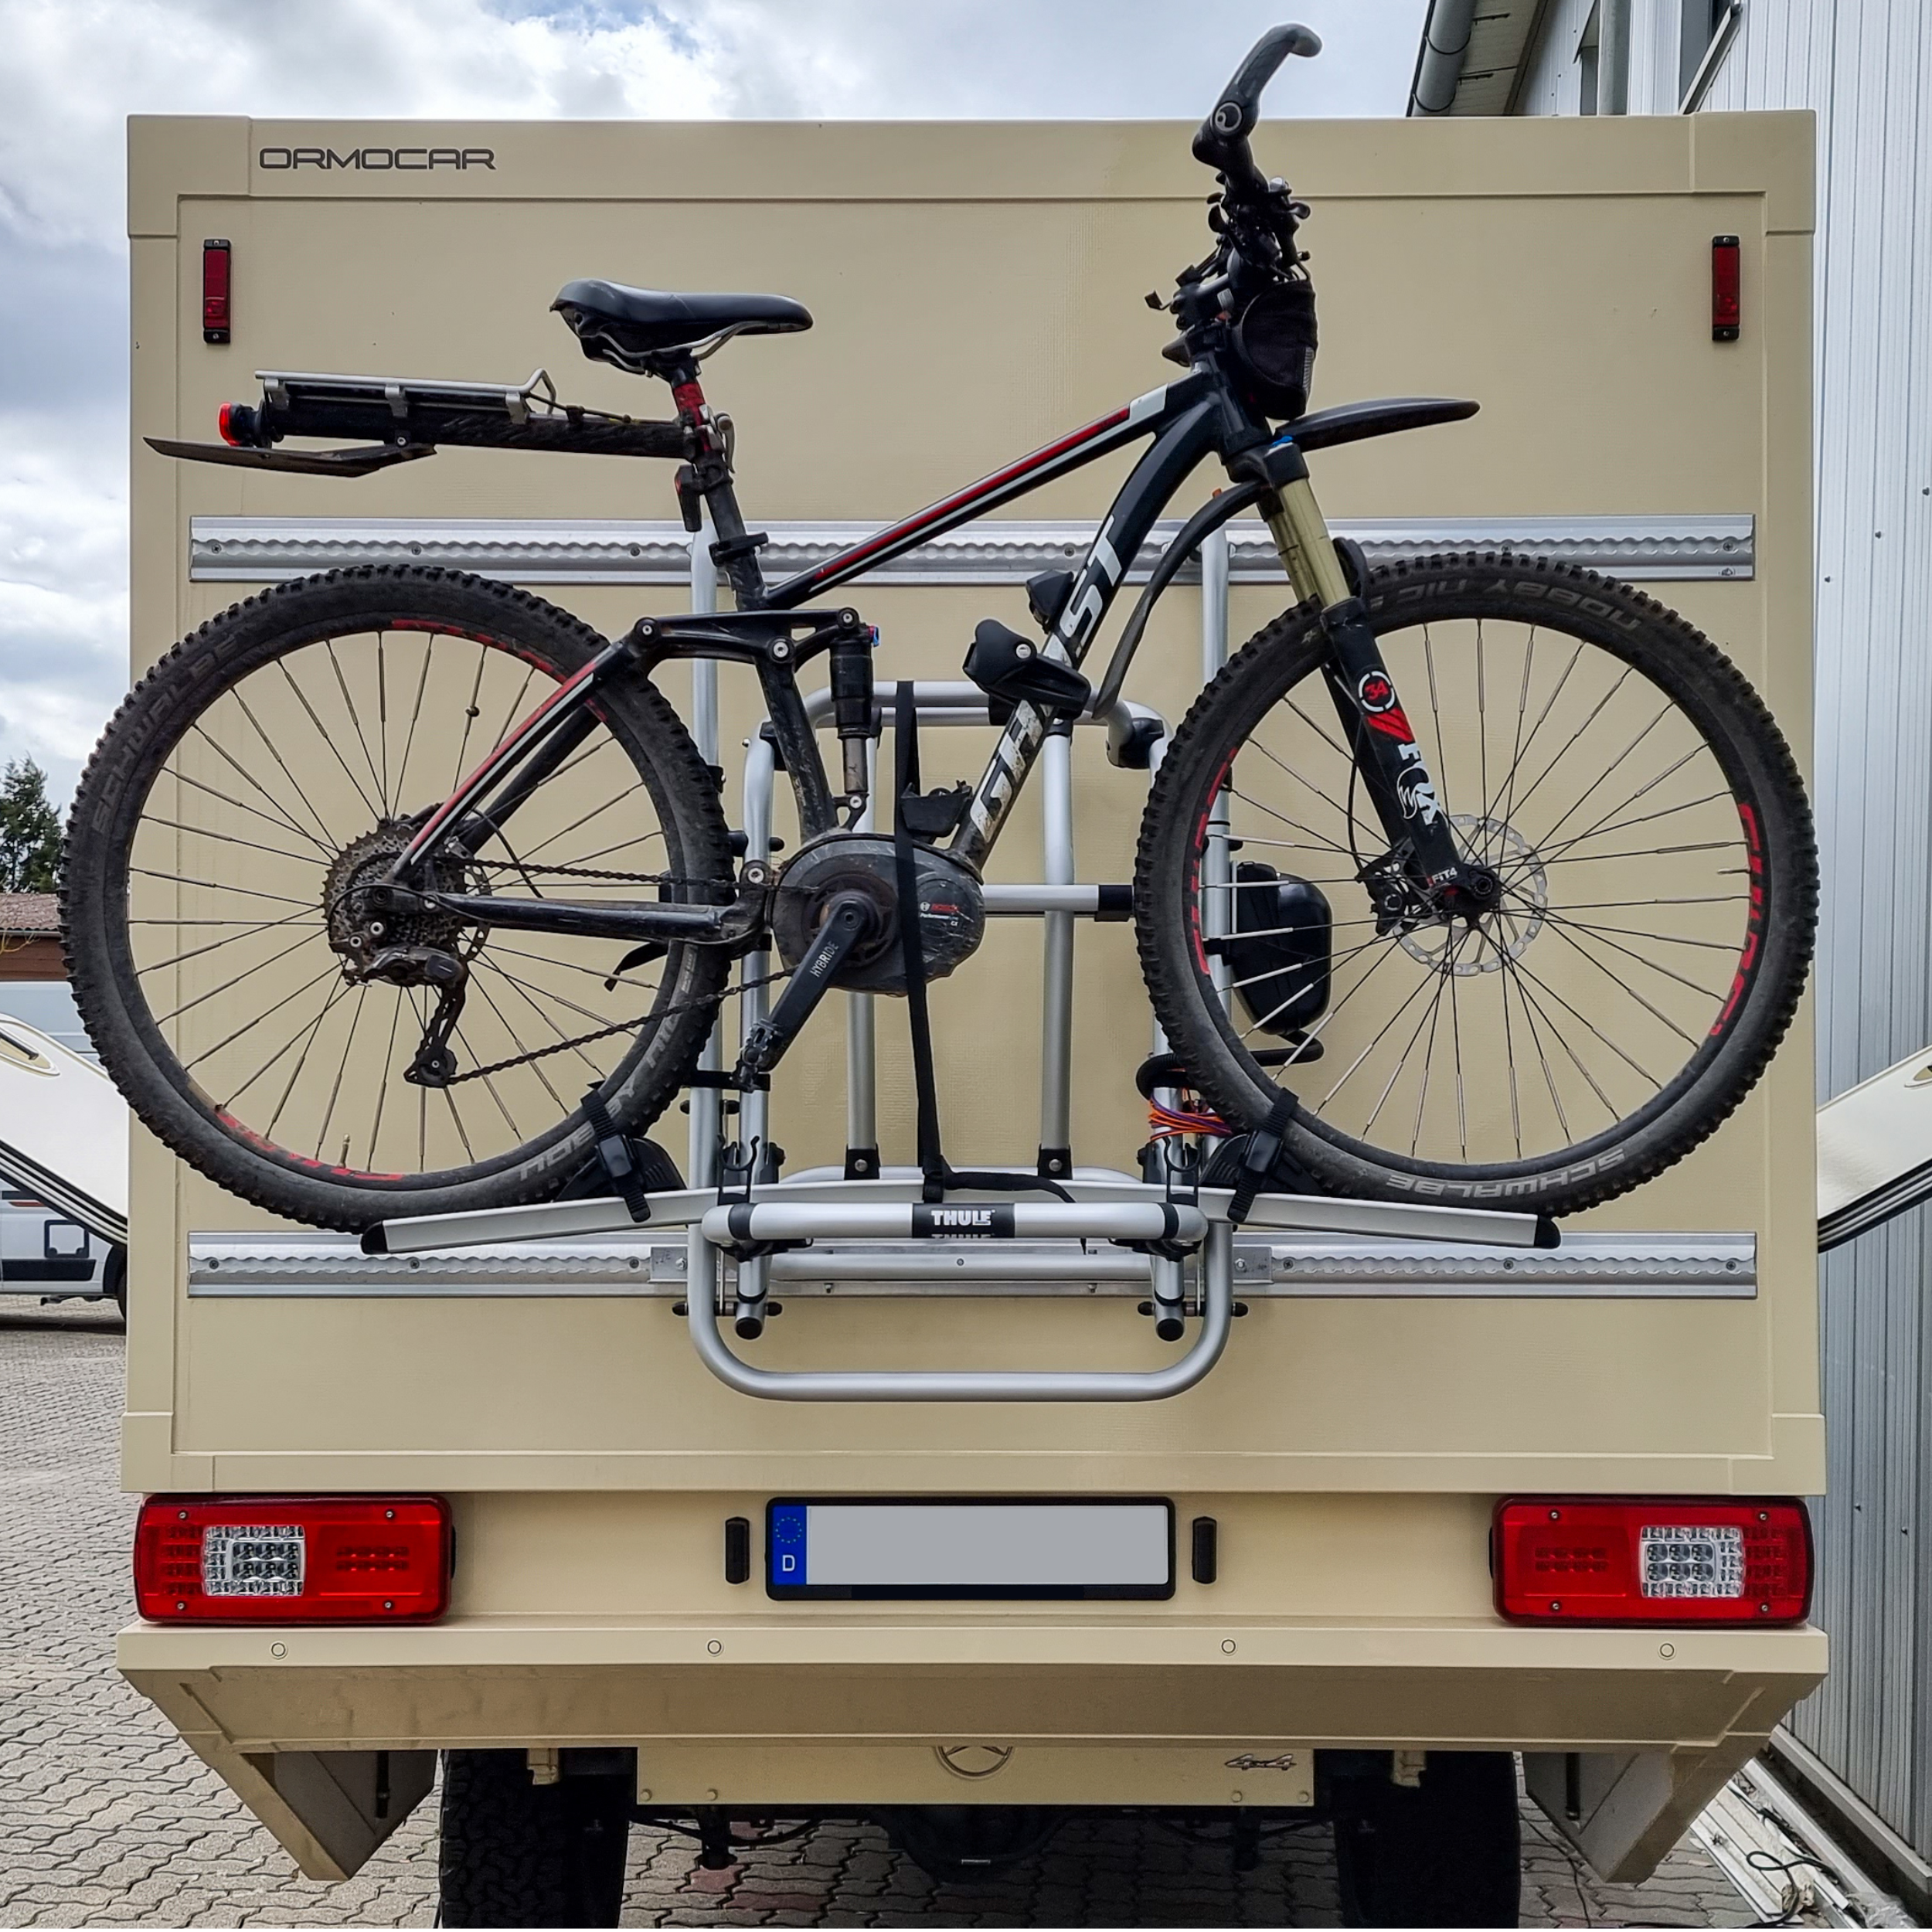 Fahrräder/E-Bikes am Wohnmobil-Heckträger fixieren. Vor- und